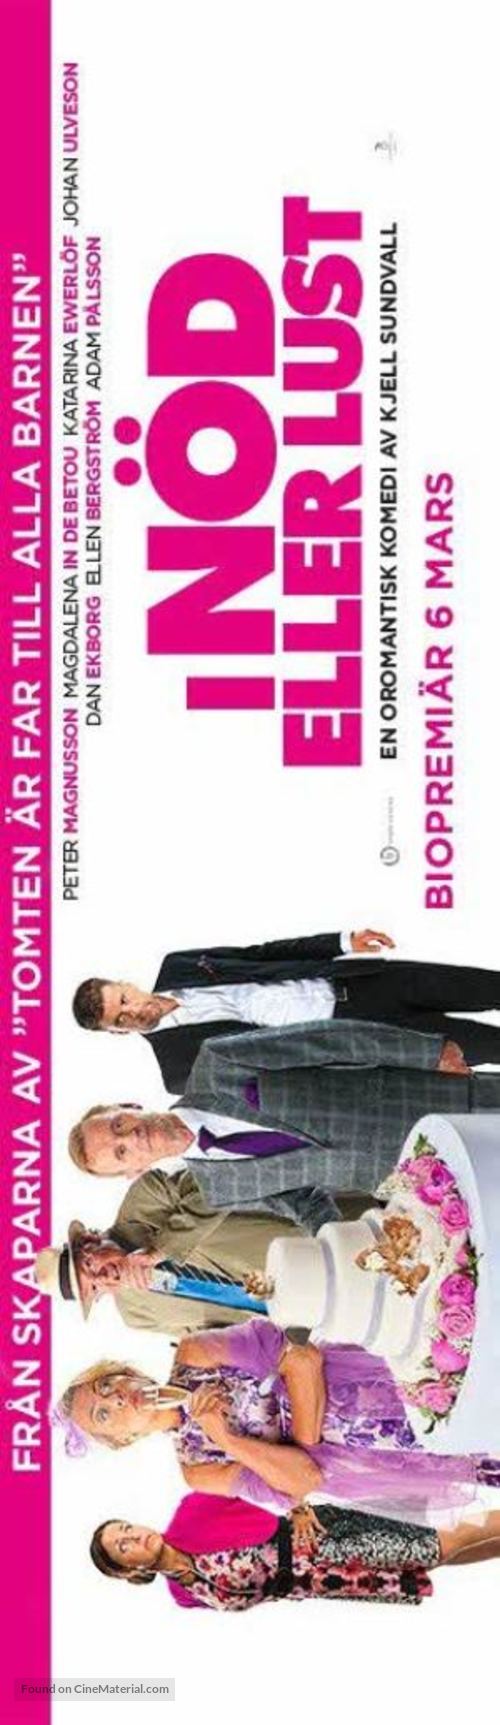 I n&ouml;d eller lust - Swedish Movie Poster